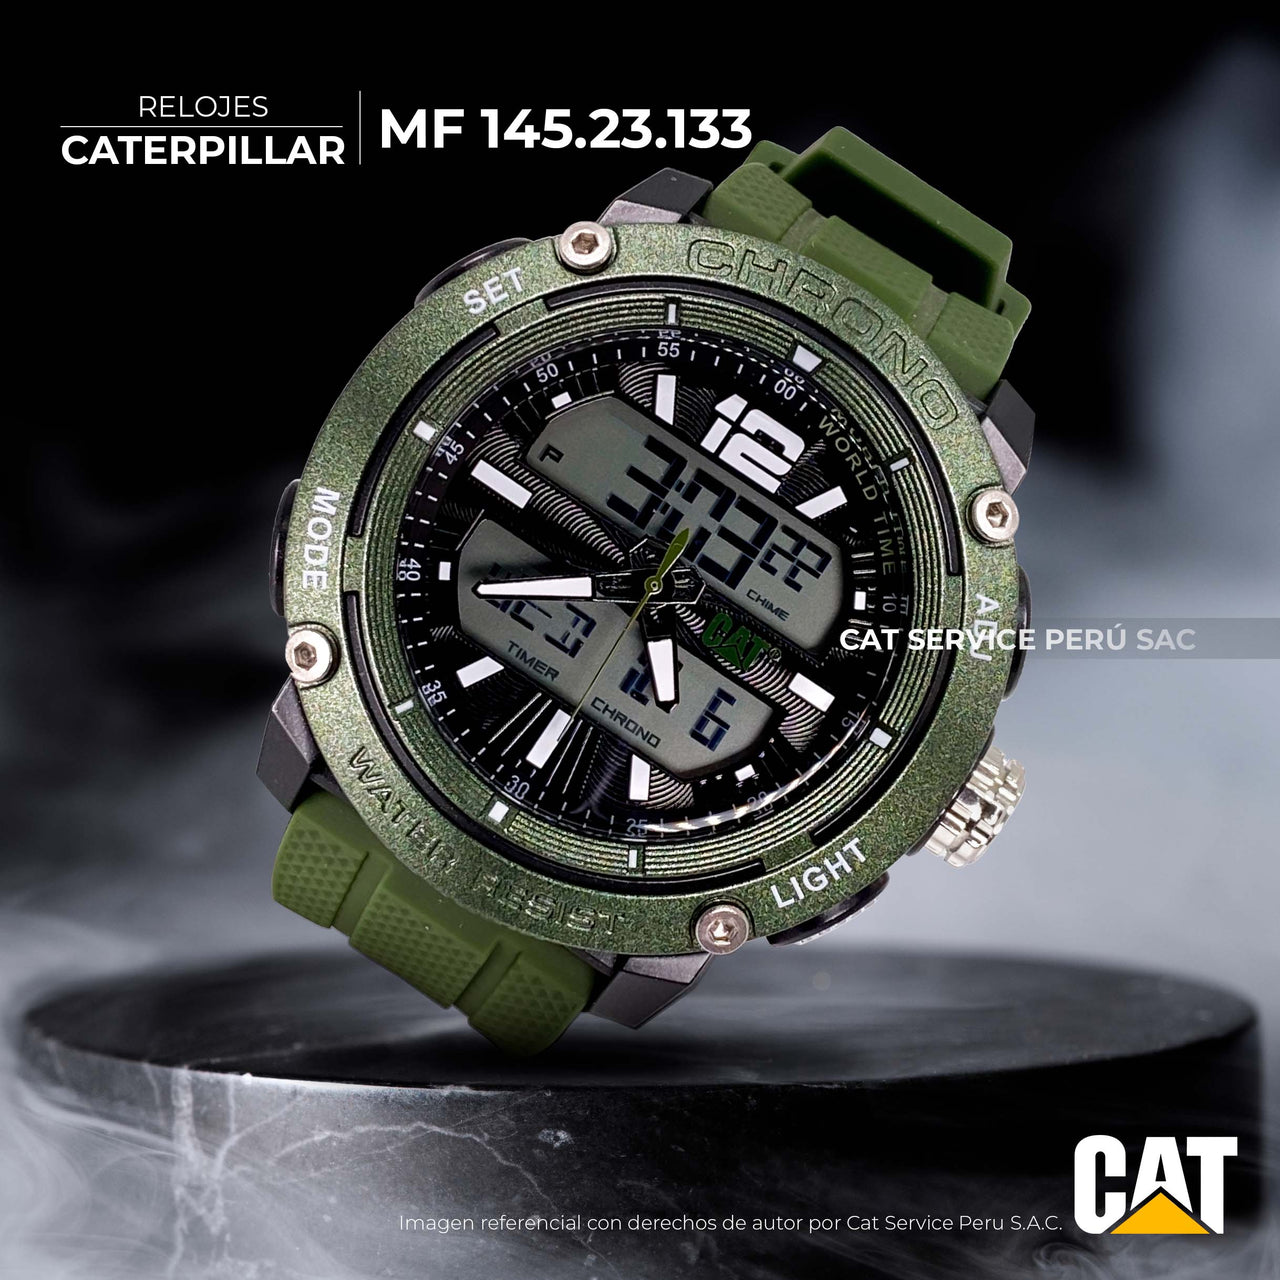 Reloj Cat MF 145.23.133